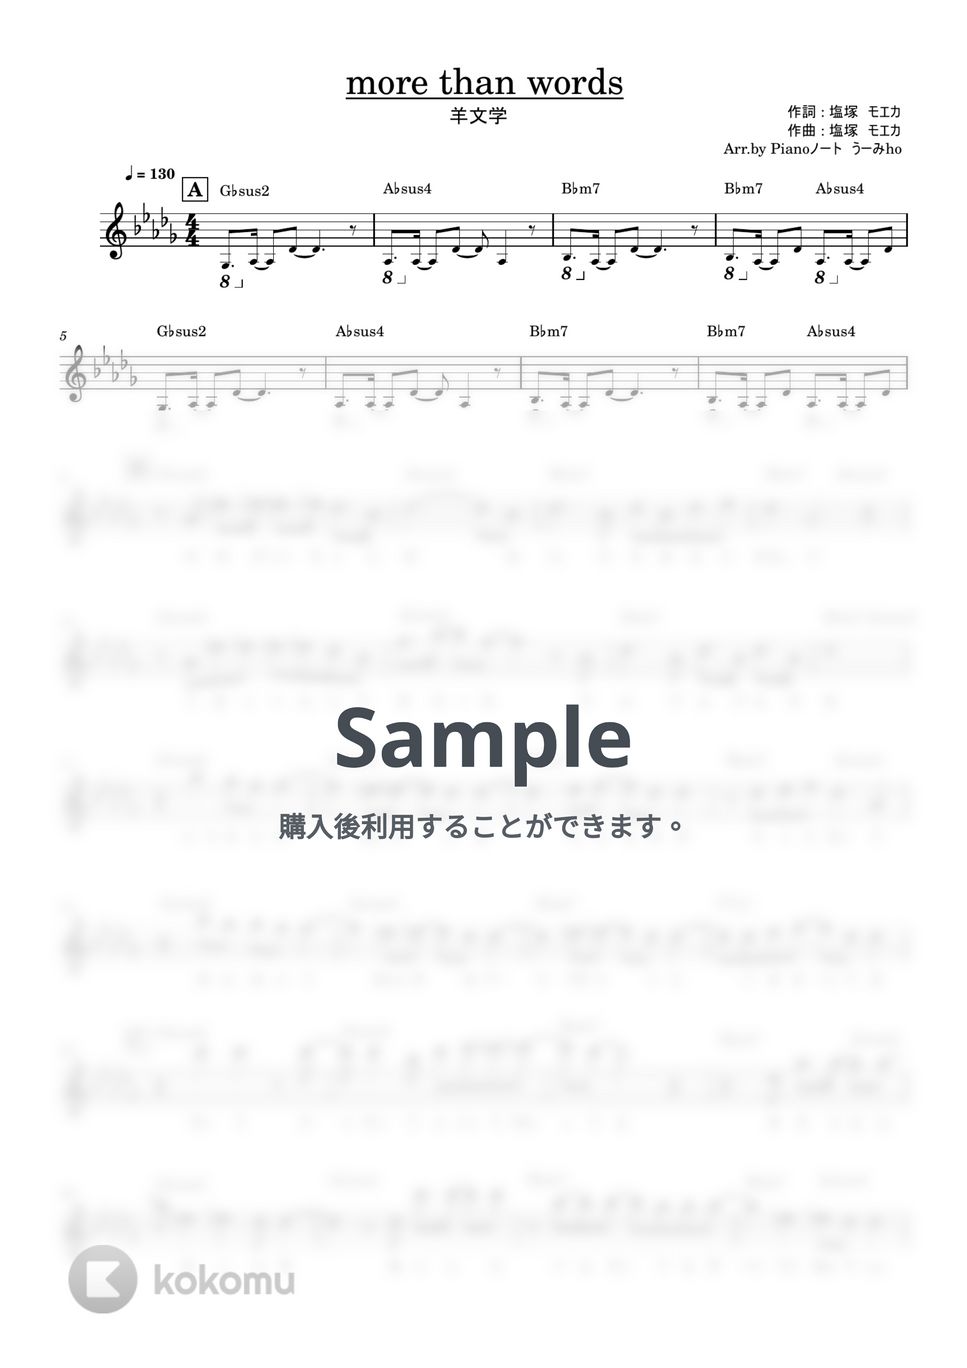 羊文学 - more than words by Pianoノートうーみho